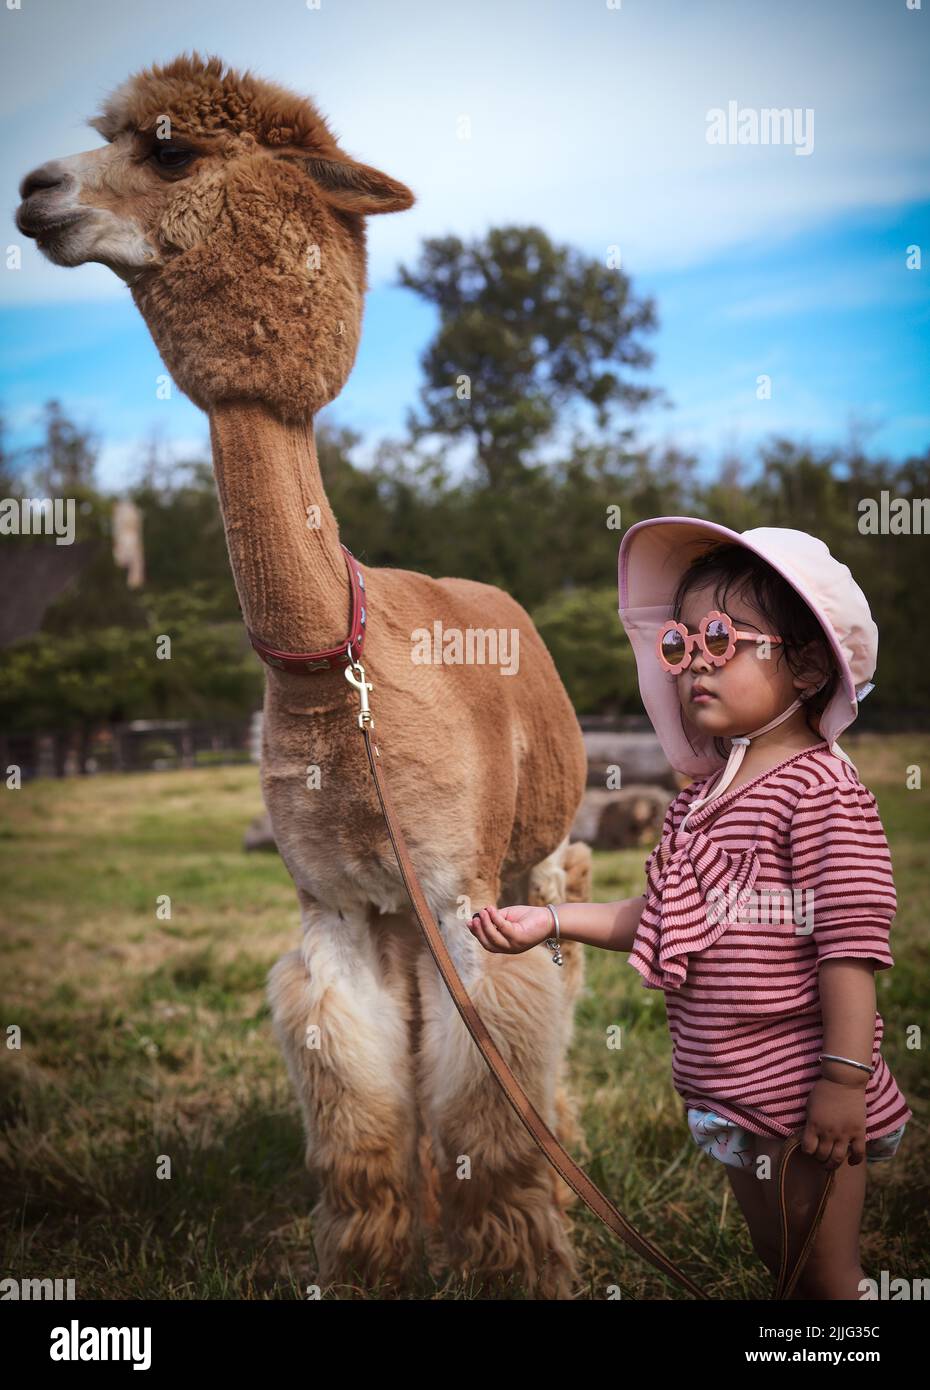 A cute little Asian girl standing next to an alpaca Stock Photo